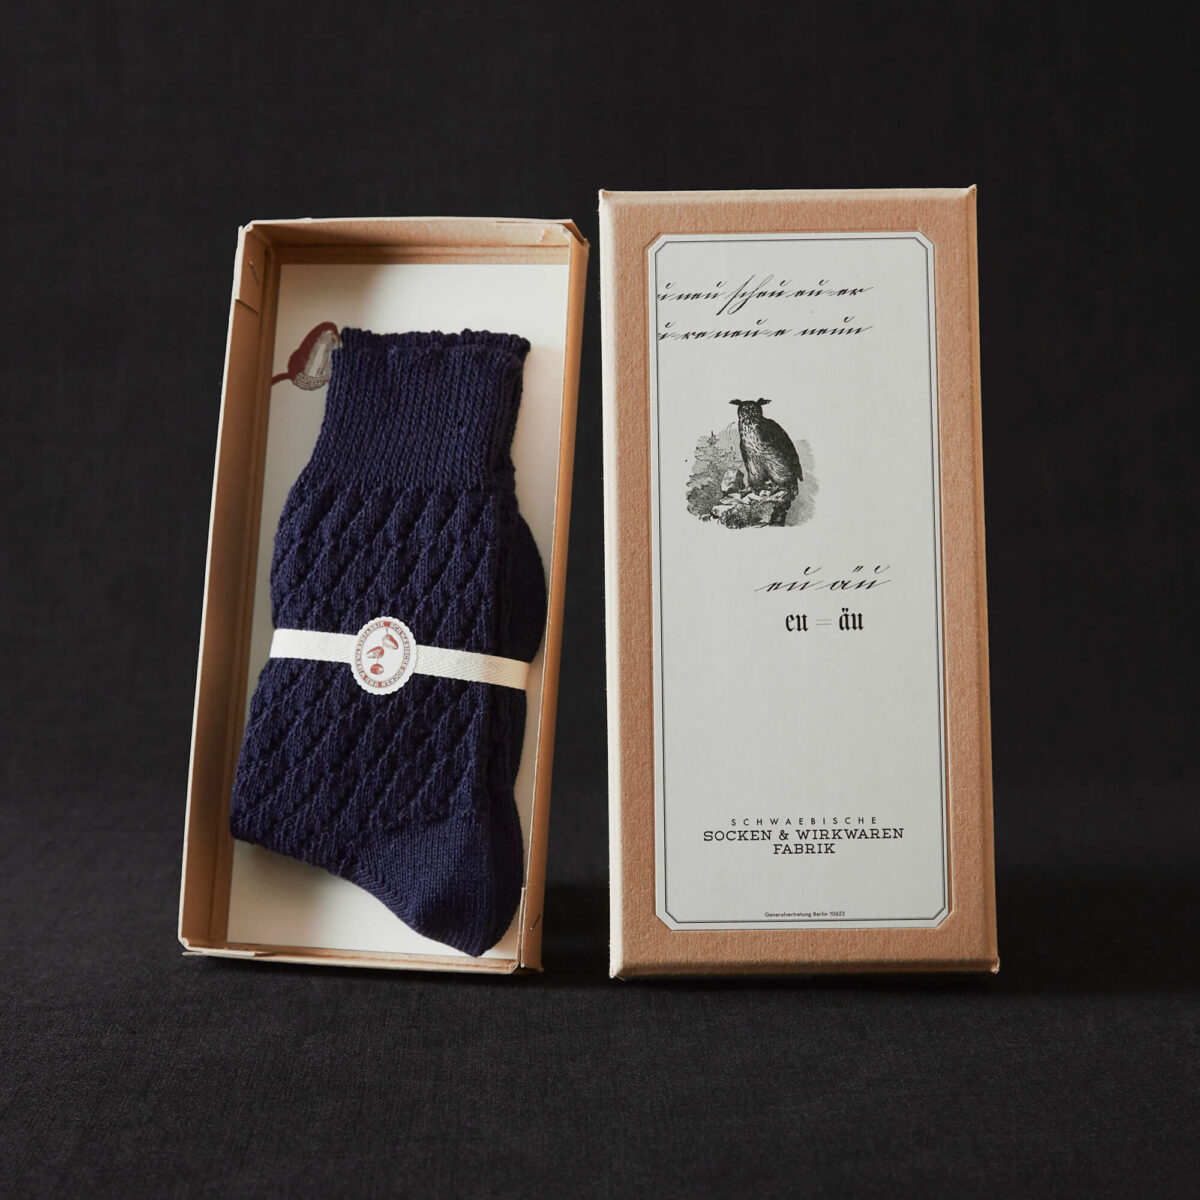 Zopfmuster-Socken, navy von Frank Leder im Hausgemachtes Shop erhältlich in einer liebevoll gestalteten Papierverpackung mit handgeschriebenem Titel und feinen Linienzeichnungen.